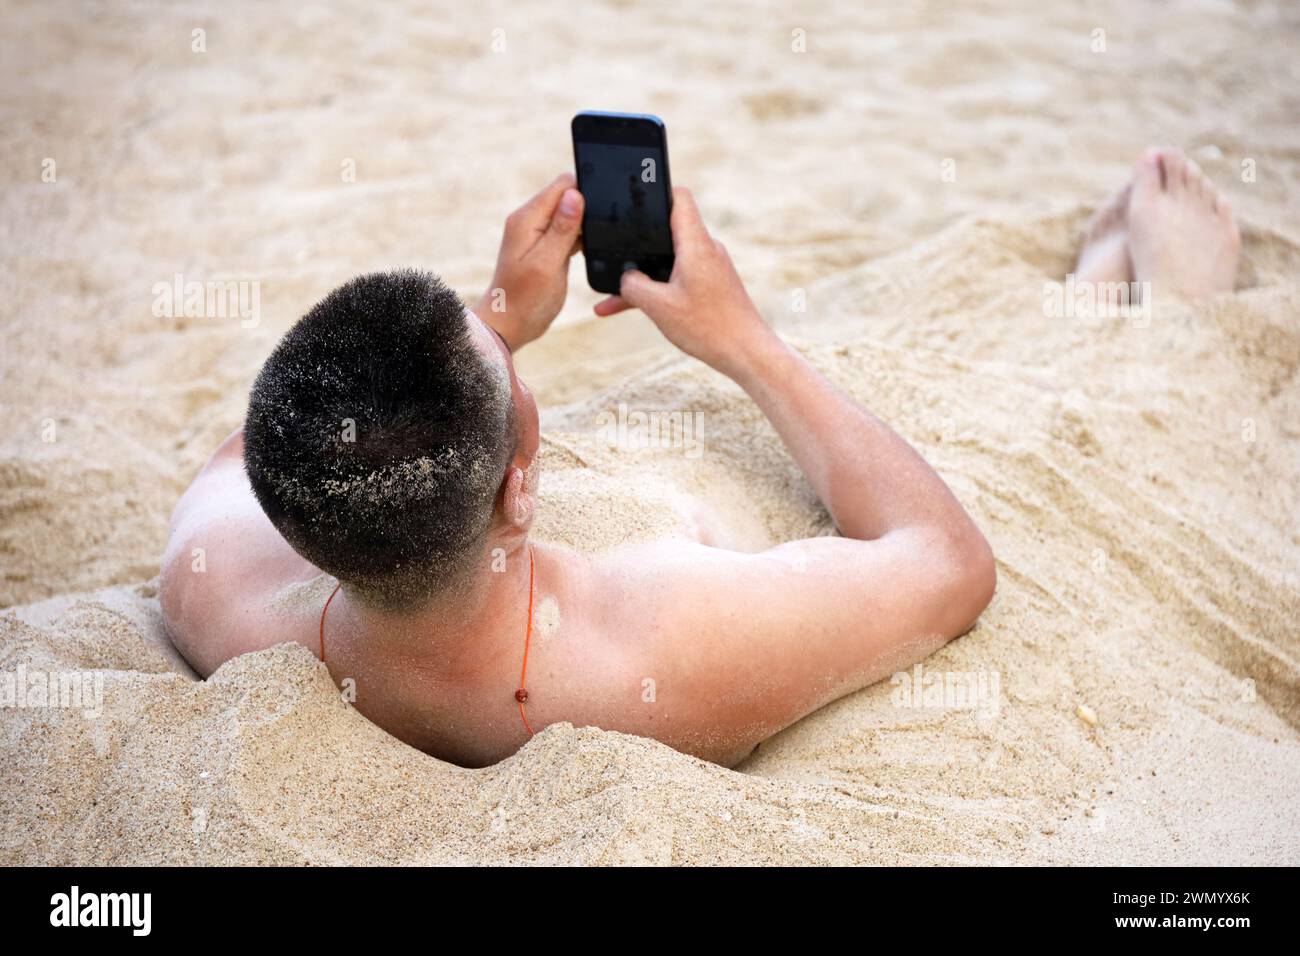 Mann, der in einem Sand begraben liegt, mit Smartphone in den Händen. Urlaub und Online-Kommunikation am Strand Stockfoto